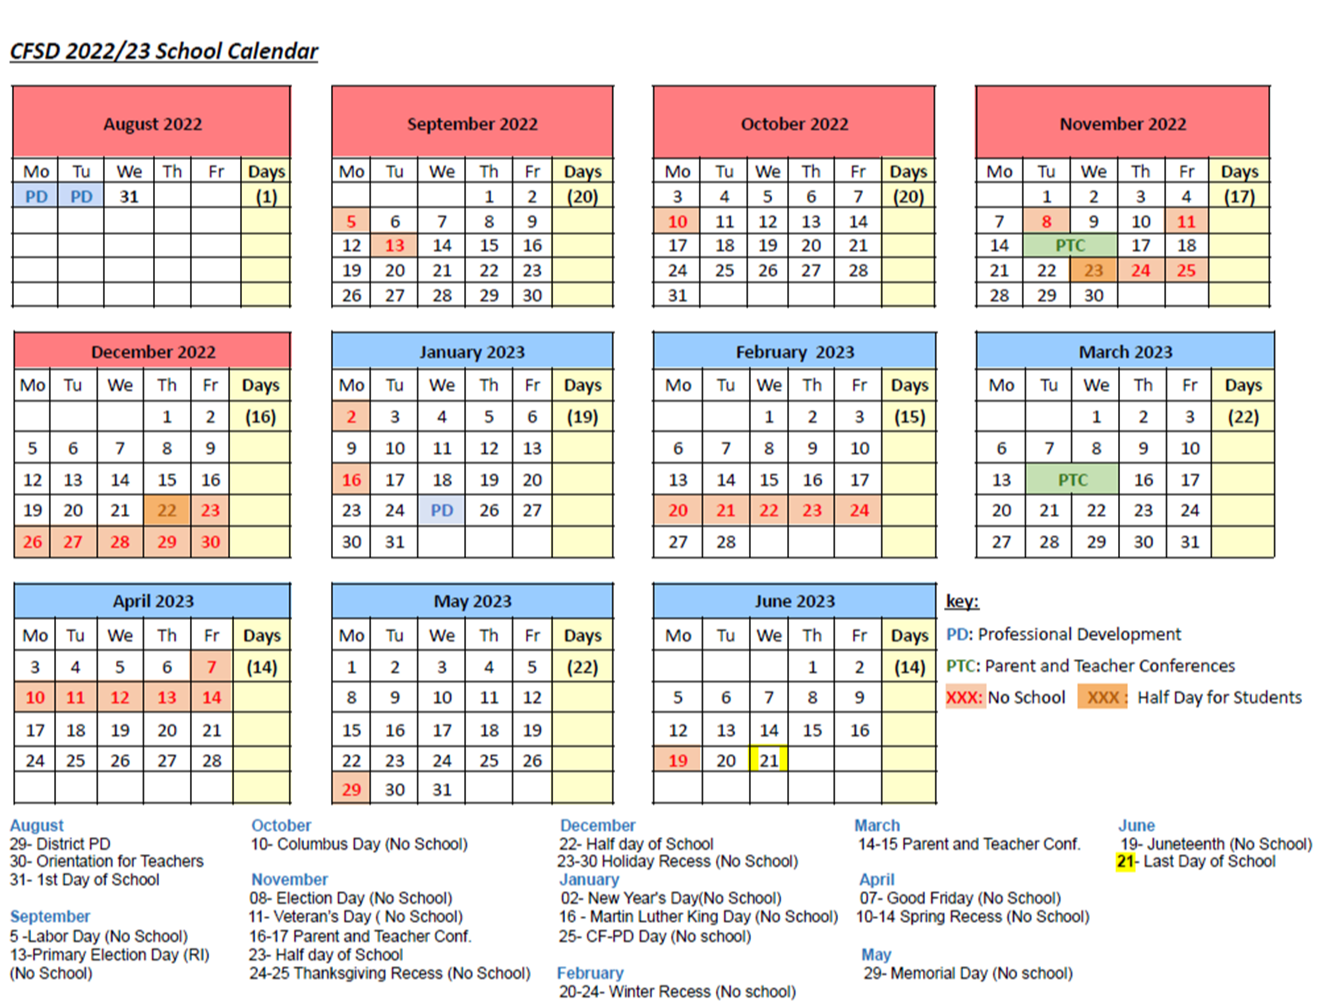 CFSD Calendar 22-23 